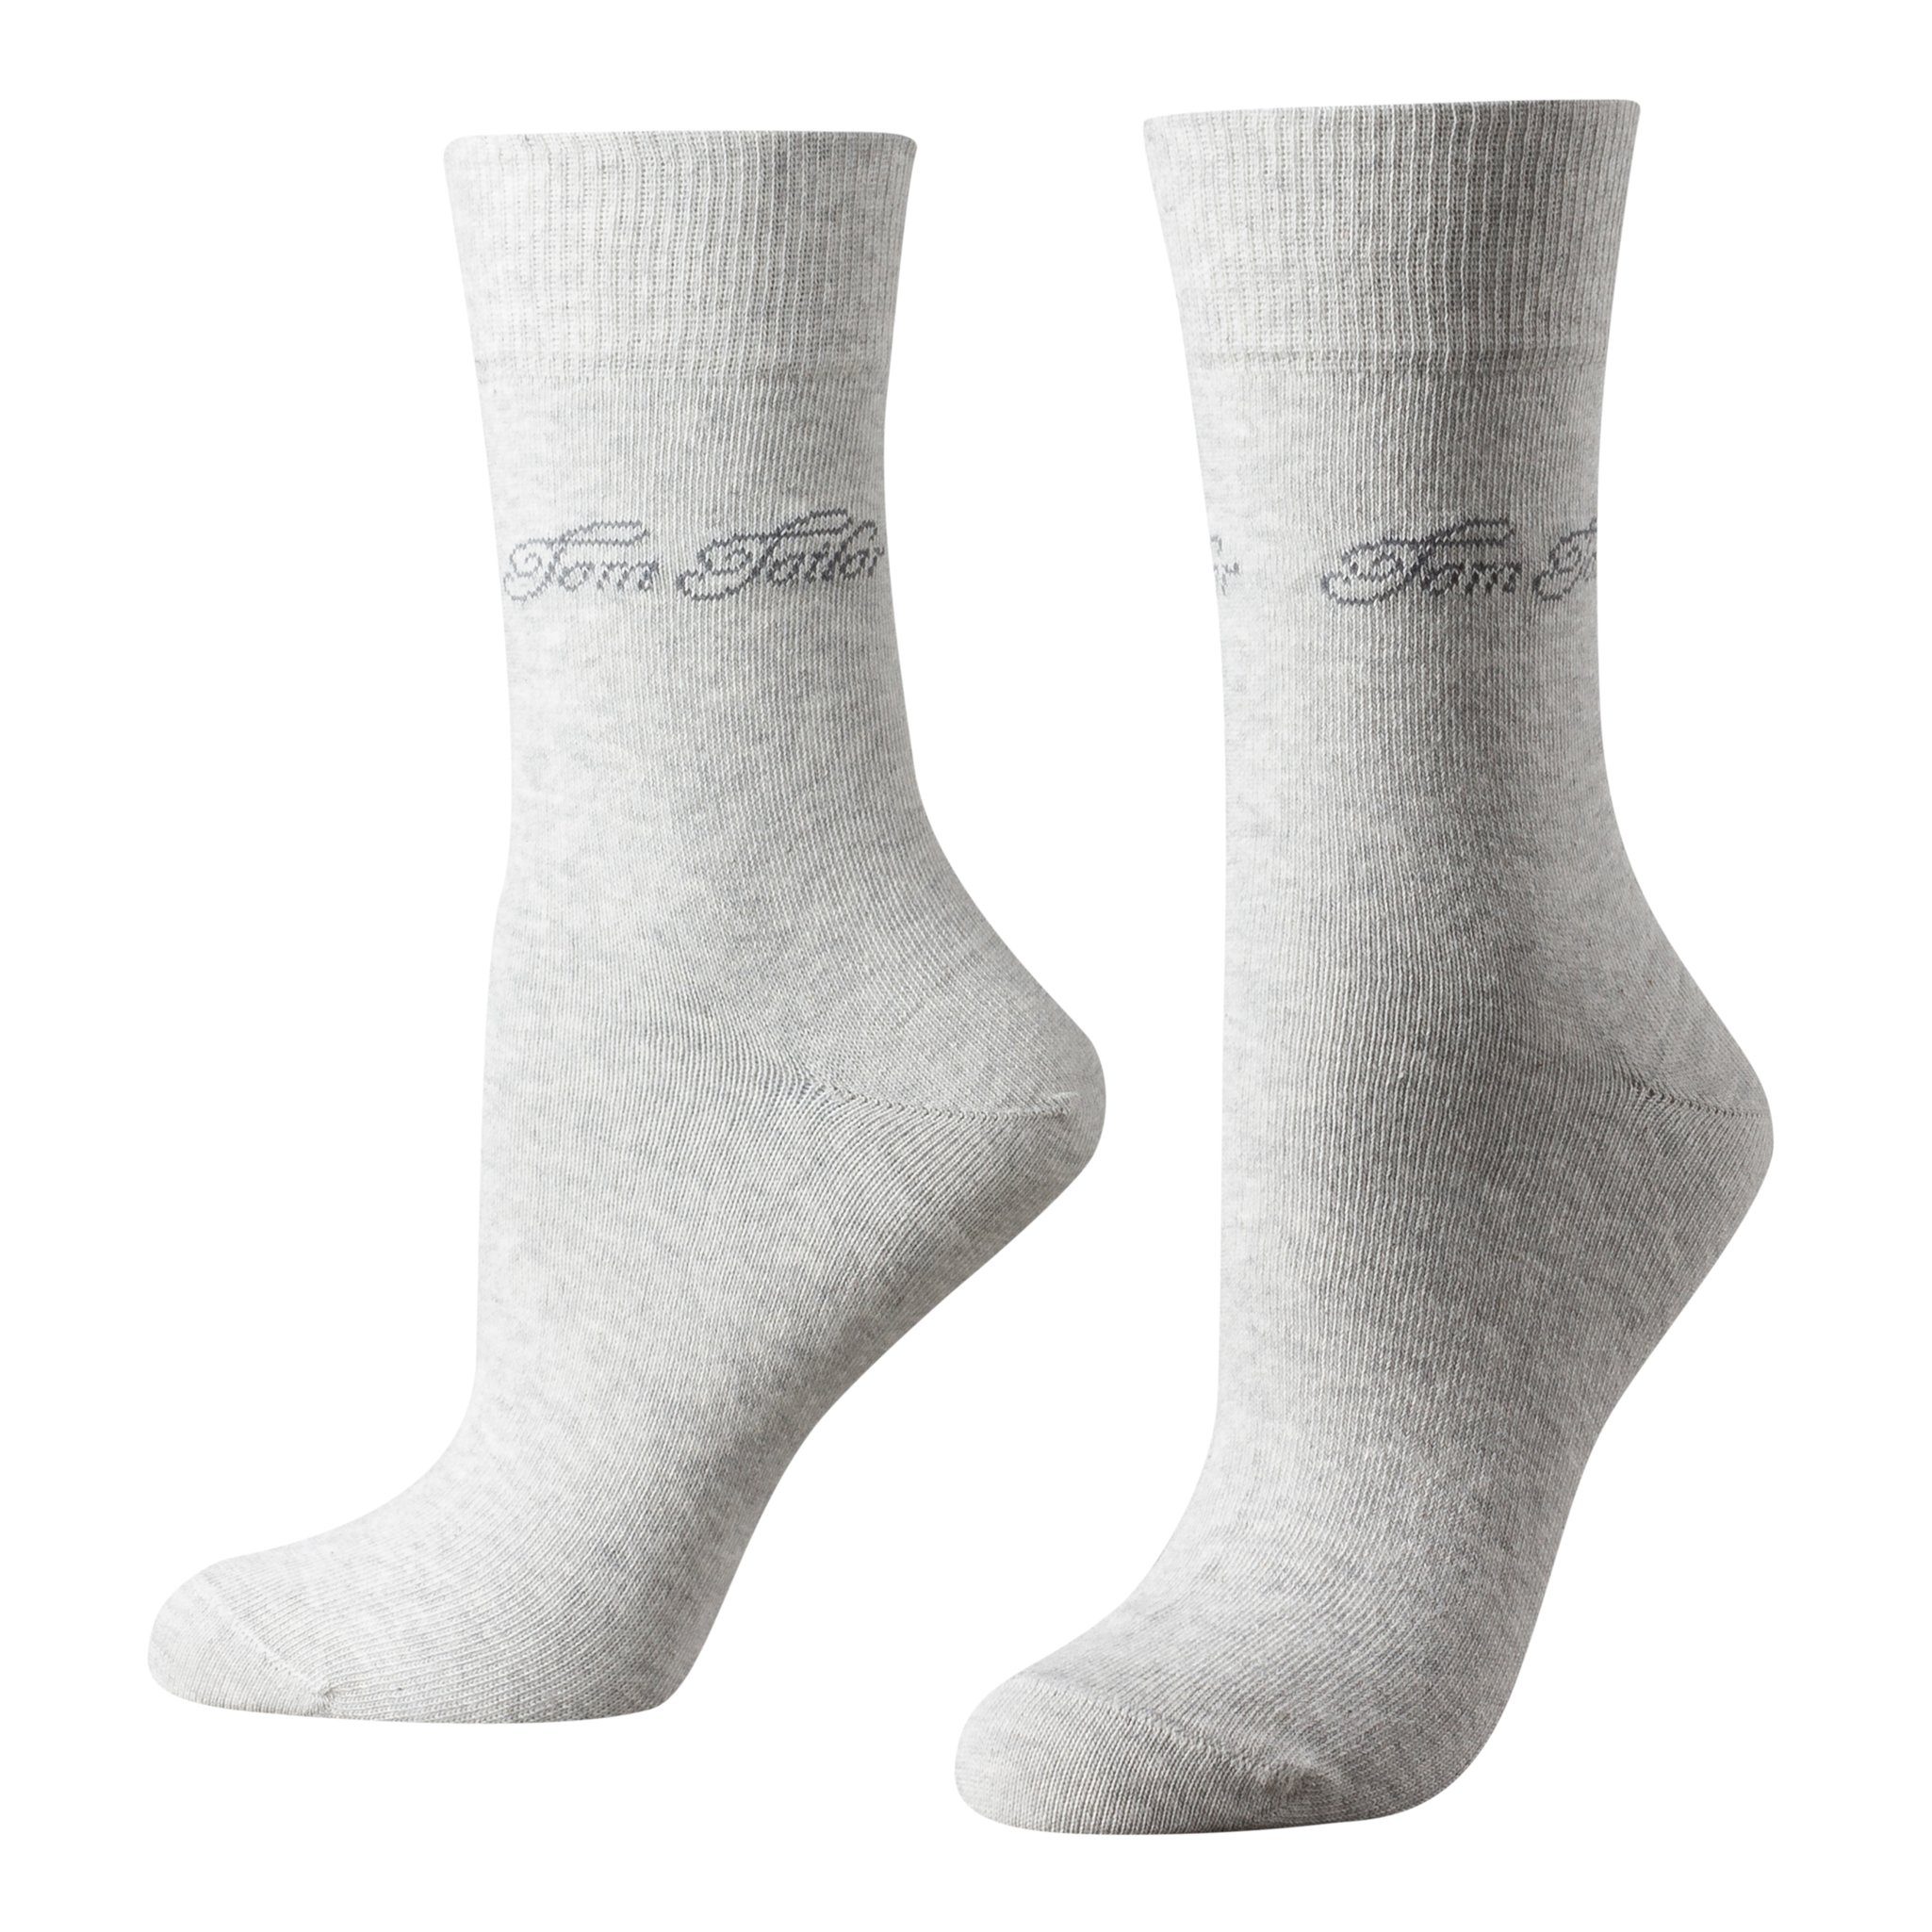 TOM TAILOR Socken 9702285038 Tom Tailor 2er Pack Basic Women Socks 9702 285 summer grey melange Doppelpack Strümpfe Socken